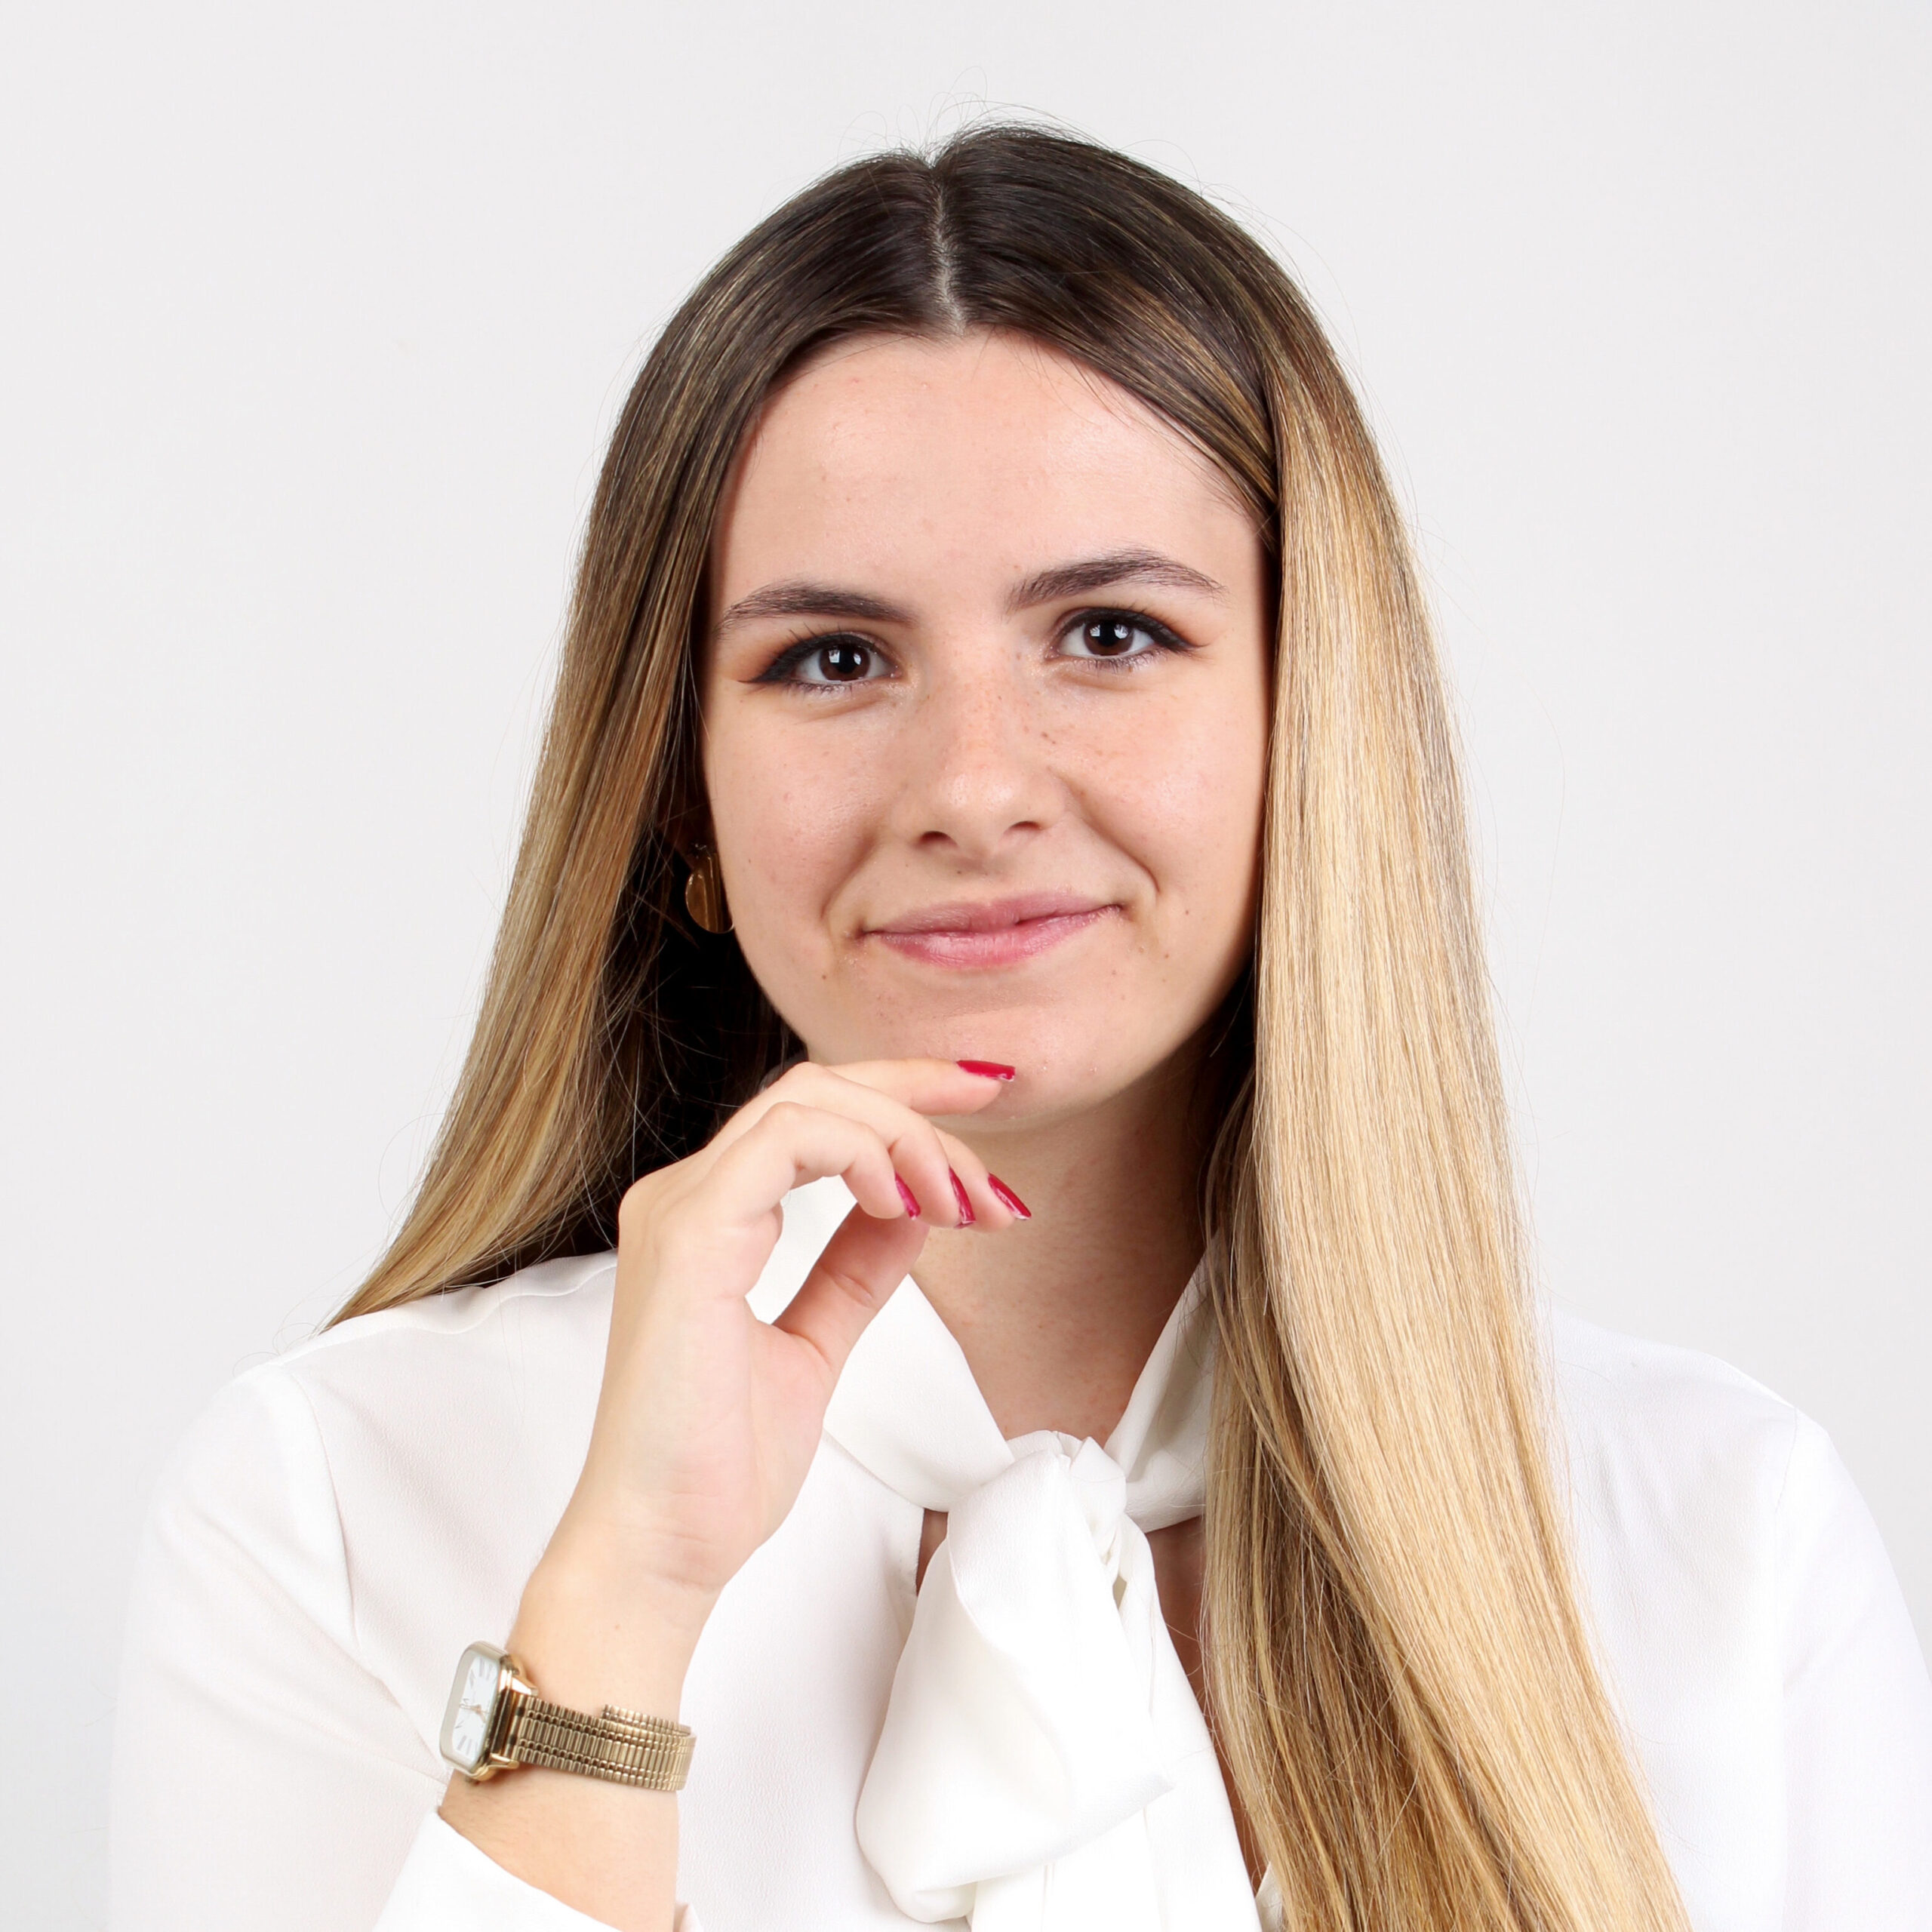  | Opinião de Adriana Martins, Estudante de 4º ano da Licenciatura em Direito na Universidade de Coimbra